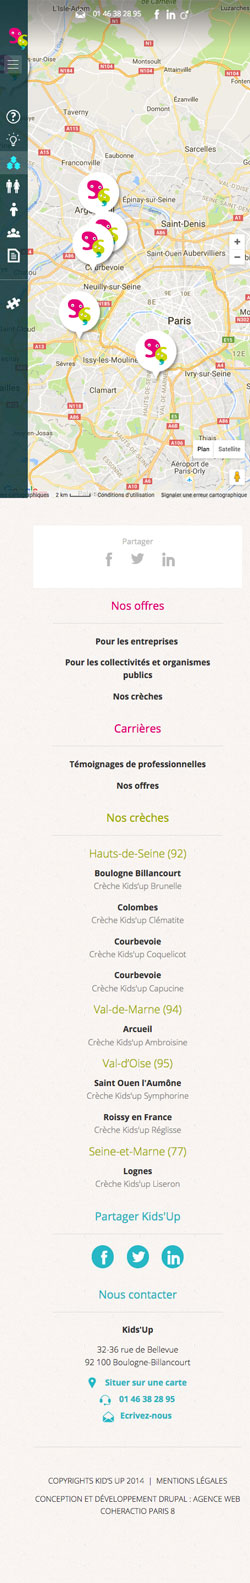 Kids'up - Site responsive mobile Drupal par l'Agence Web Paris Coheractio